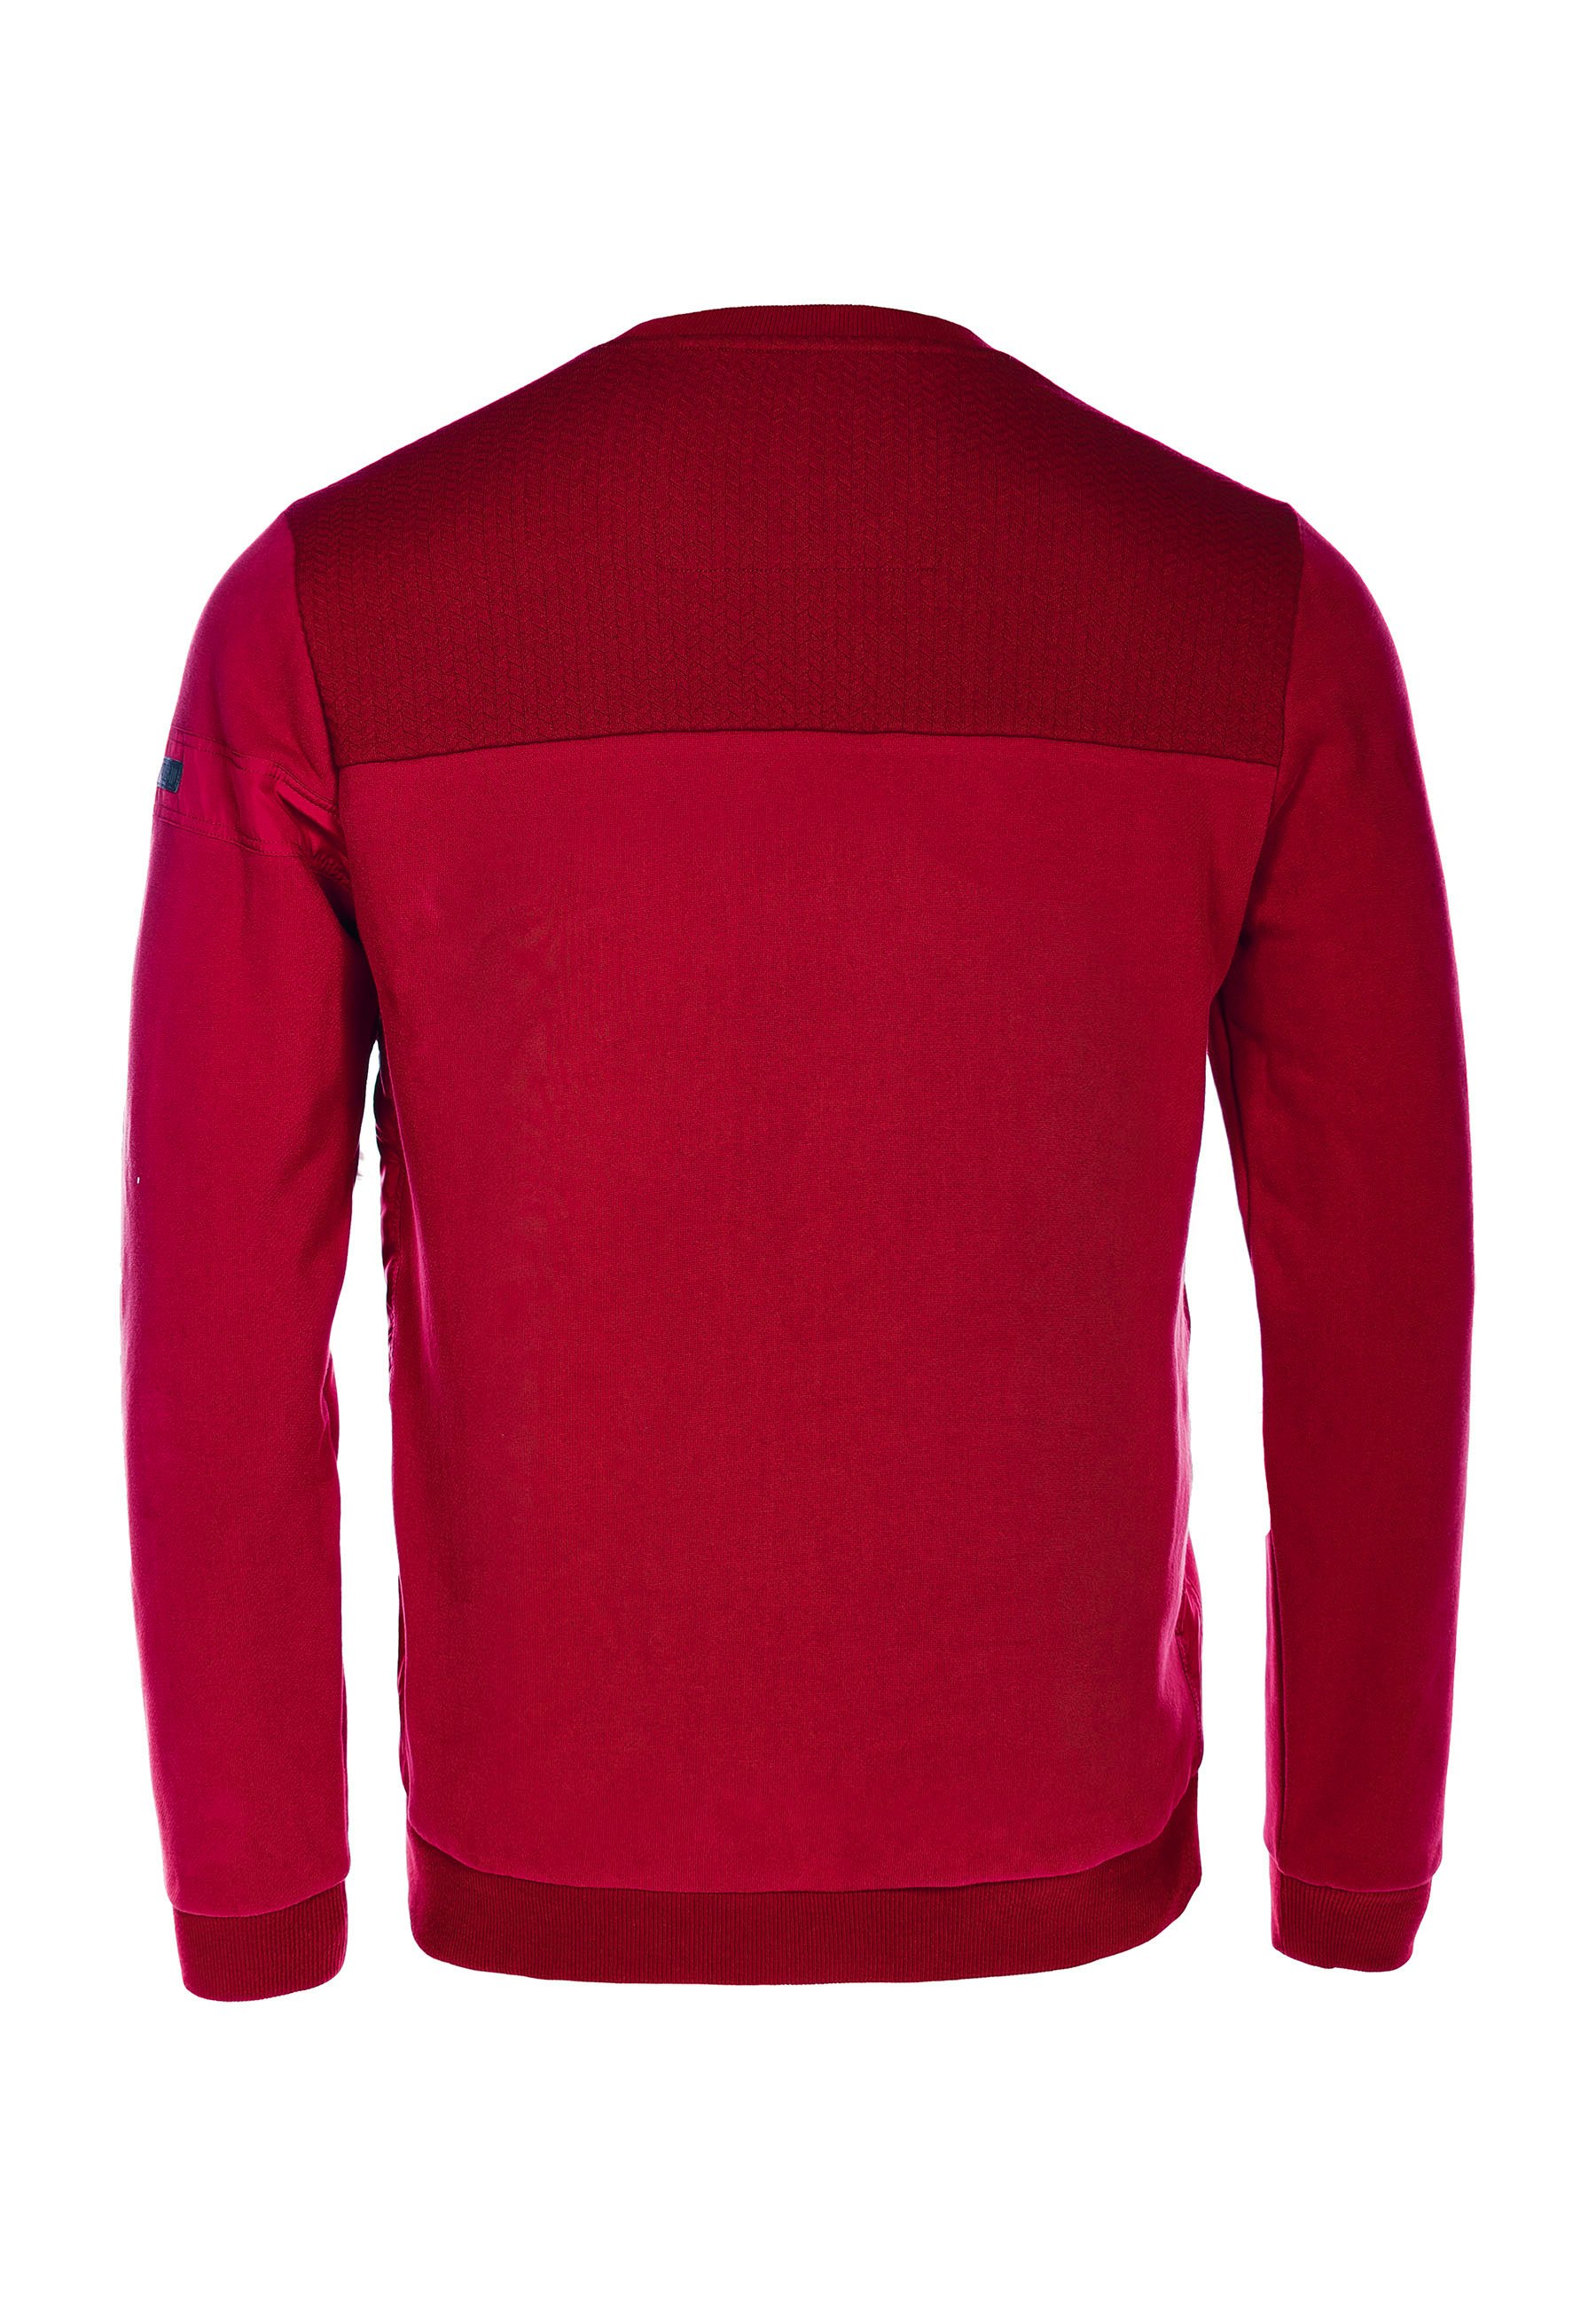 Questo Sweatshirt Eduard ruby